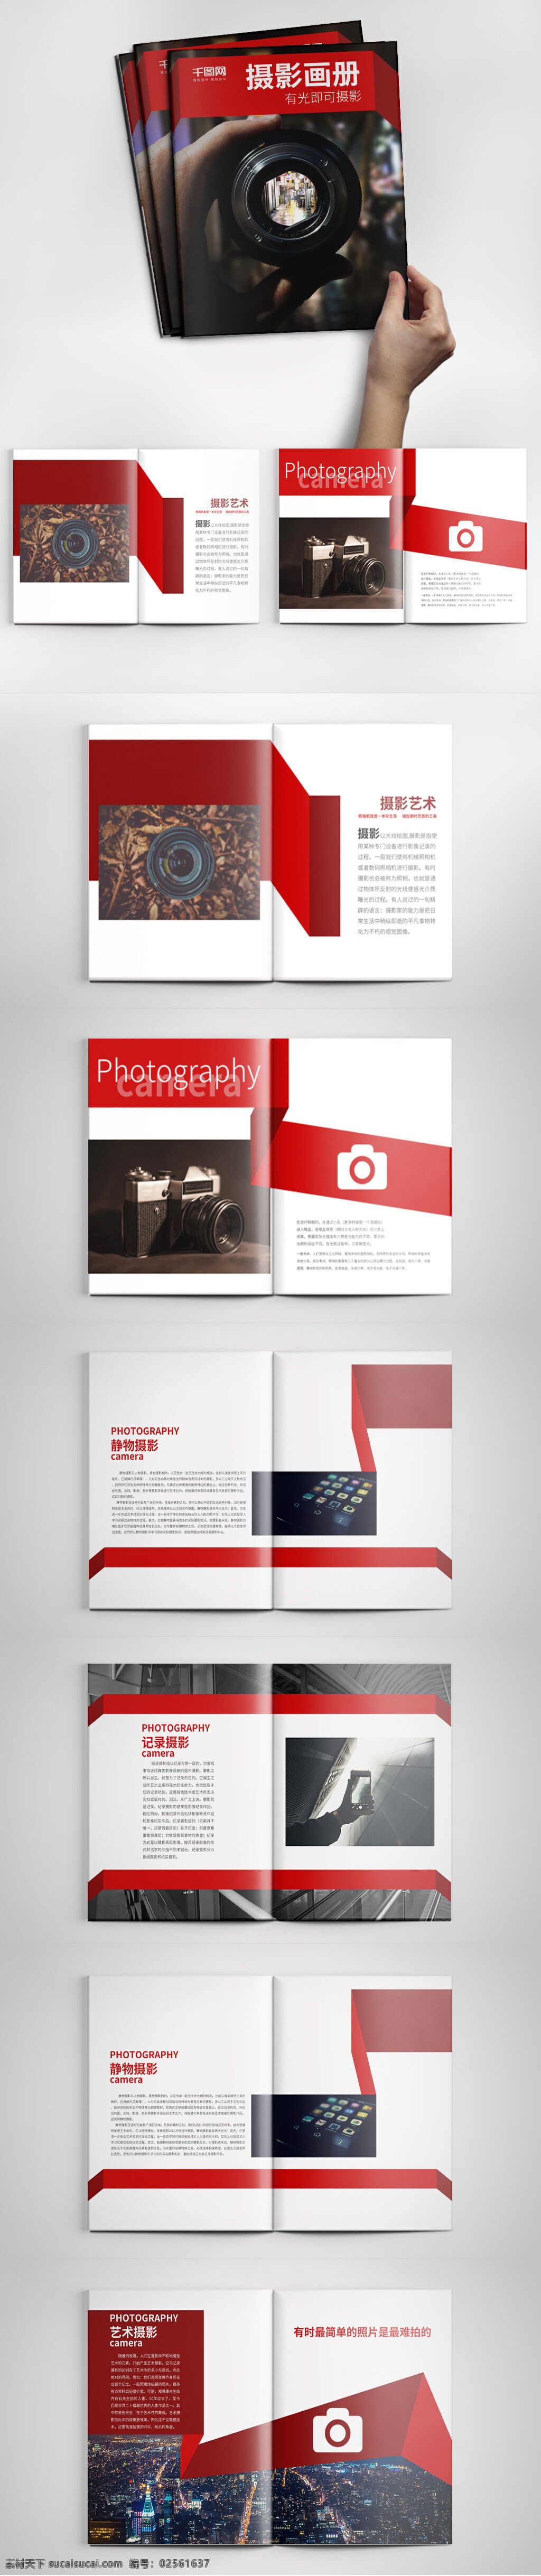 大气 红色 创意 画册设计 模板 创意画册 大气画册 公司画册 红色画册 摄影画册 影集画册